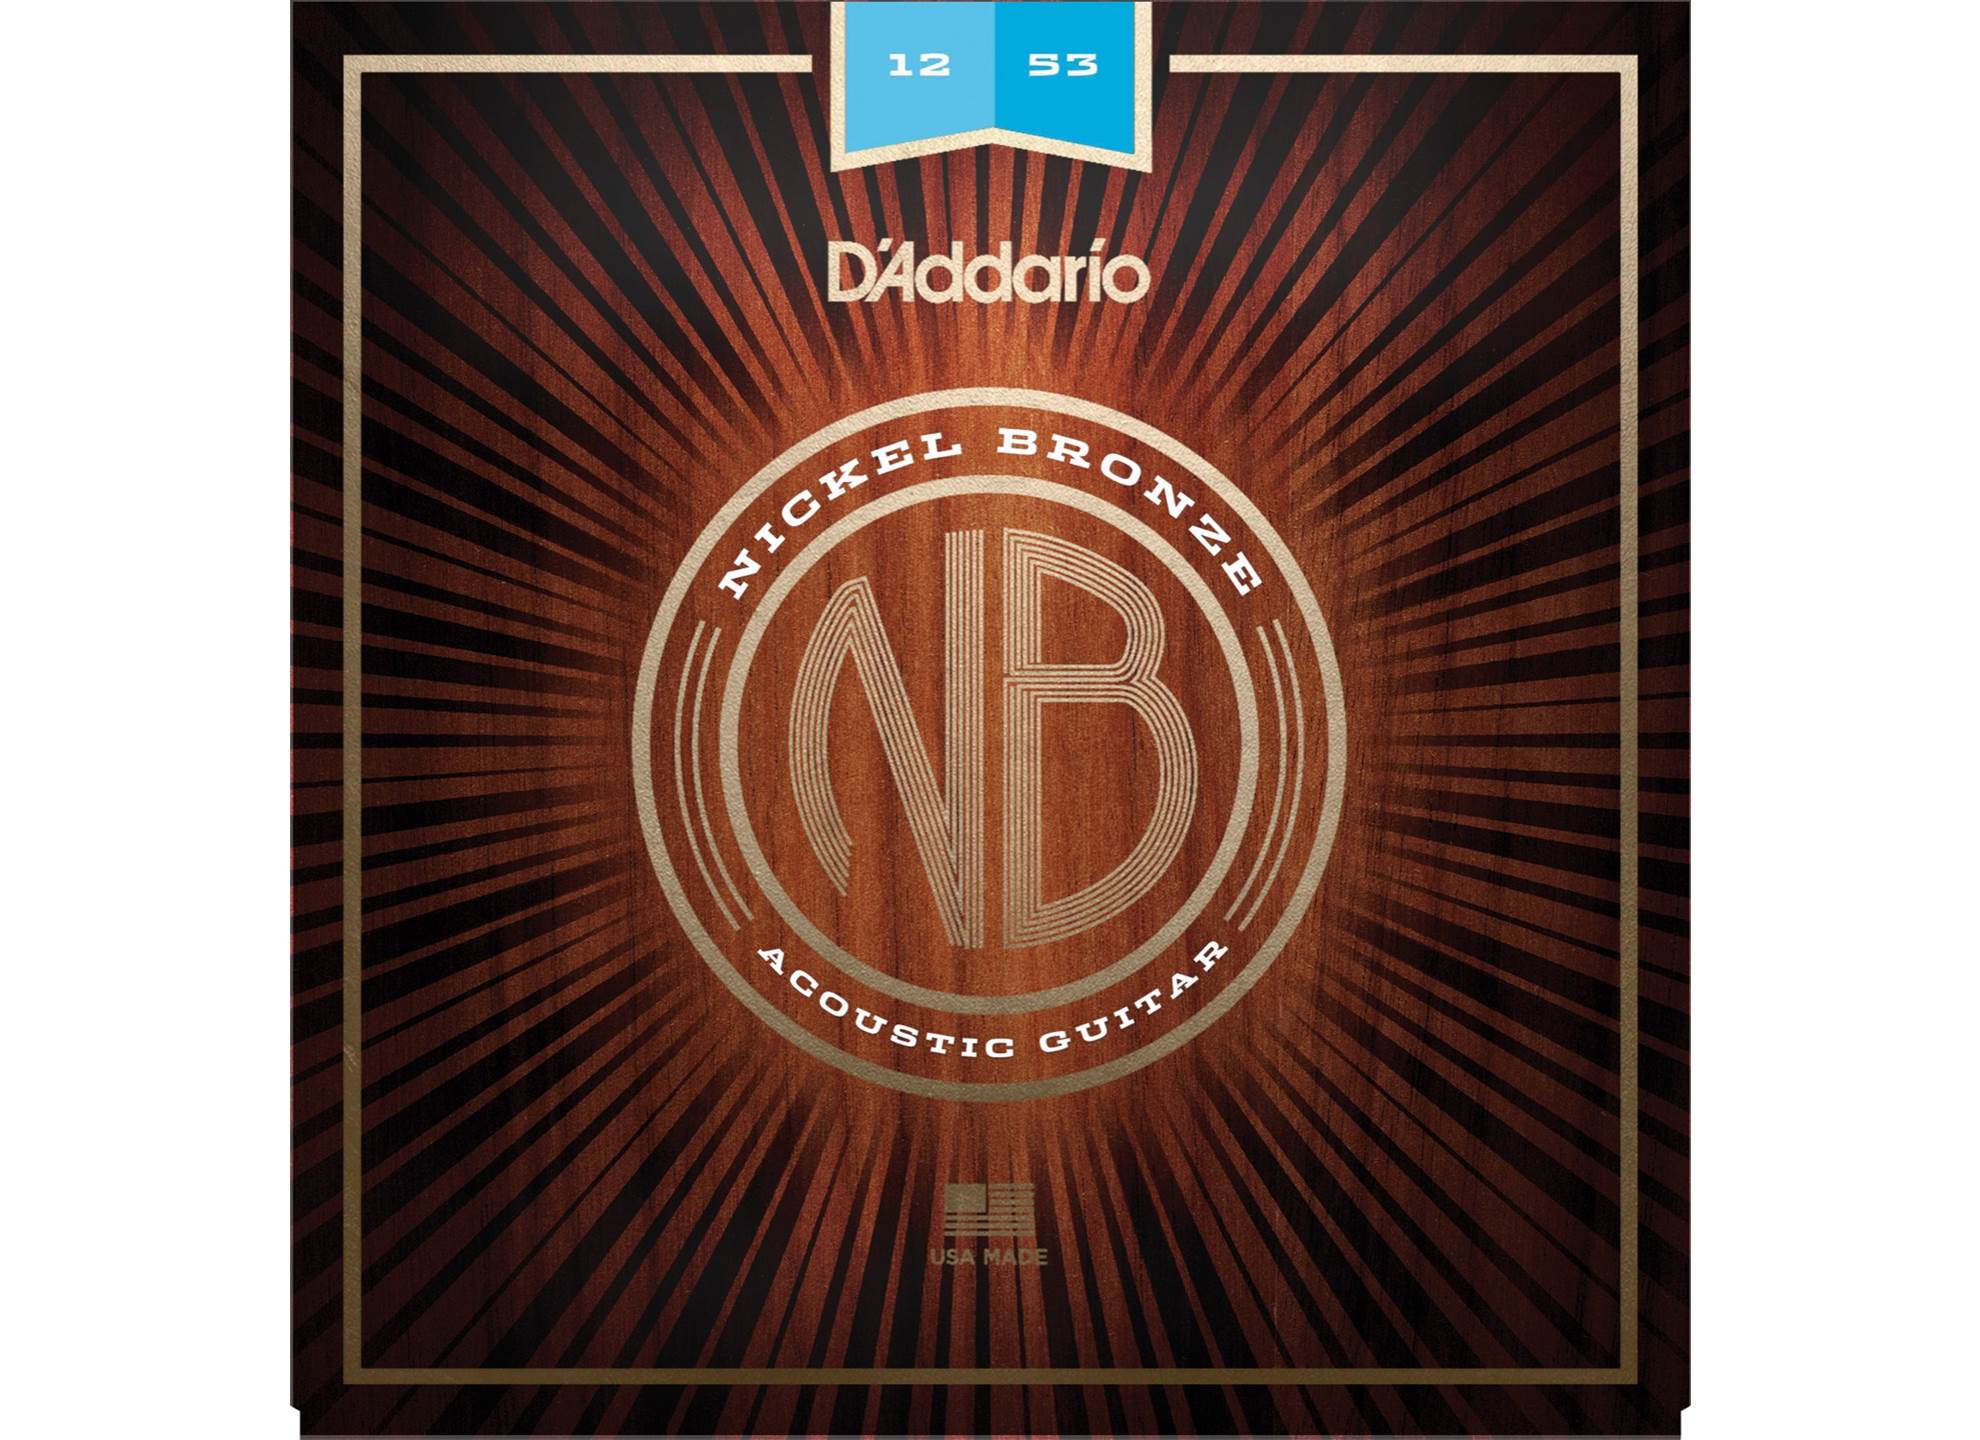 NB1253 Nickel Bronze 12-53 Light